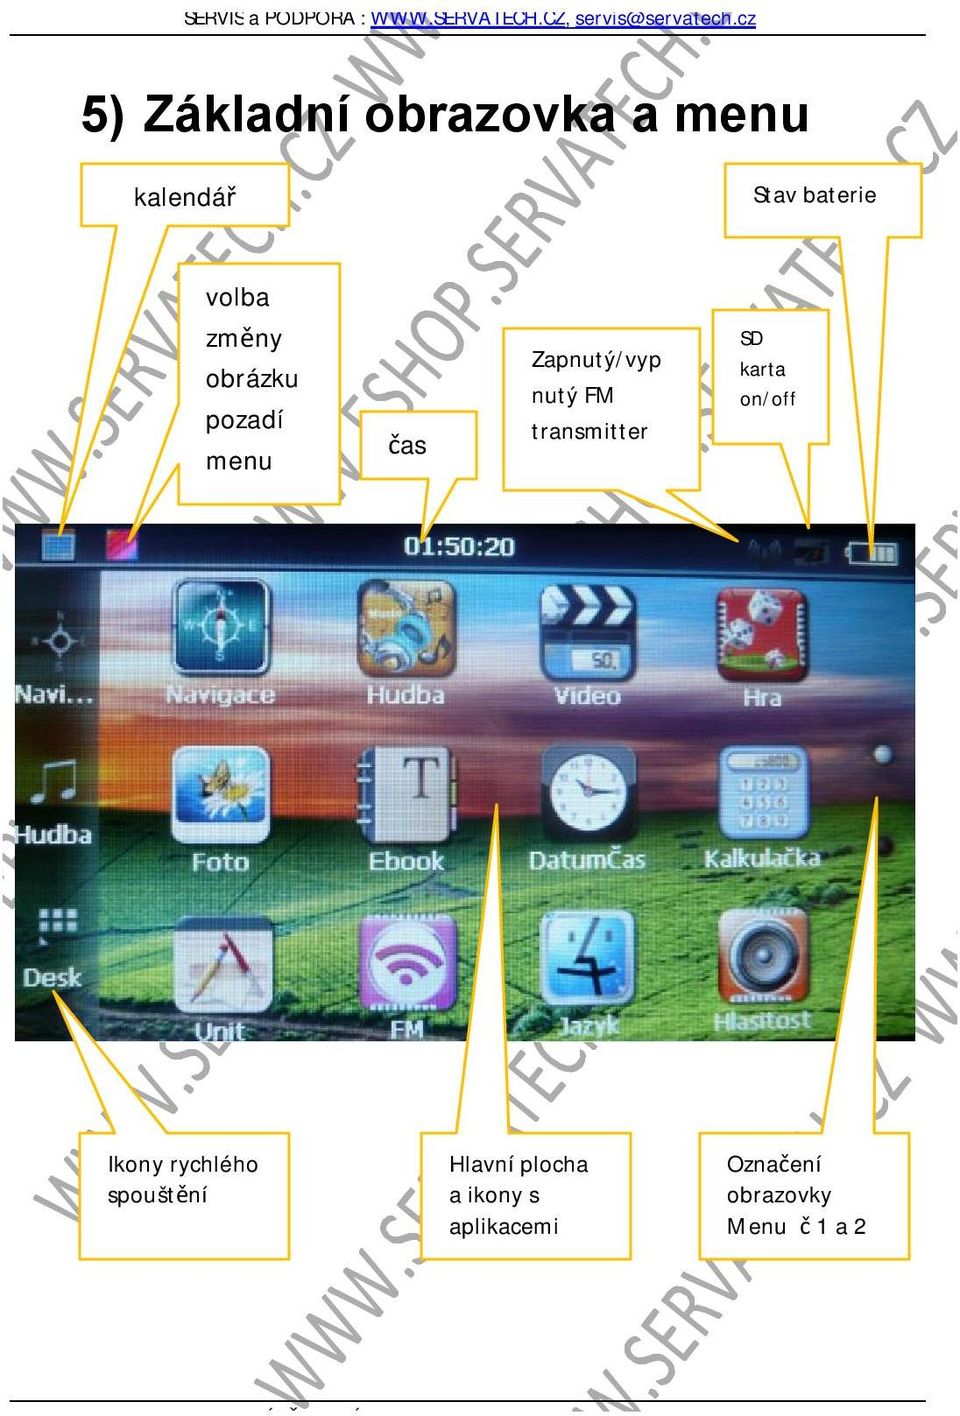 rychlého spouštění Hlavní plocha a ikony s aplikacemi Označení obrazovky